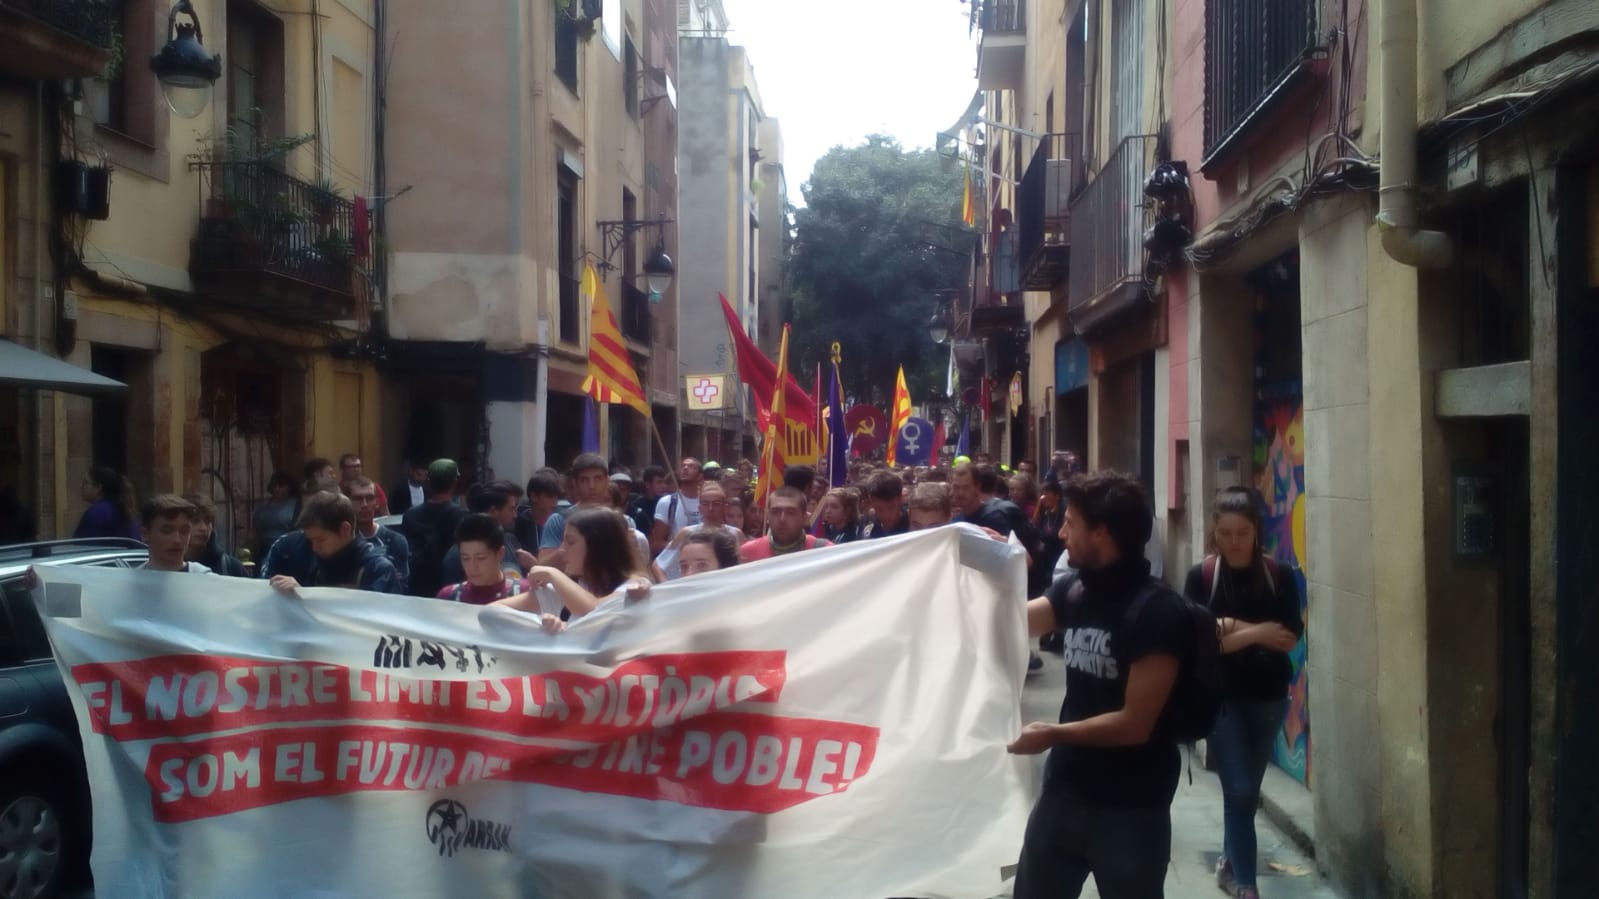 "Ràbia, ràbia, ràbia": Arran es manifesta pel centre de la ciutat